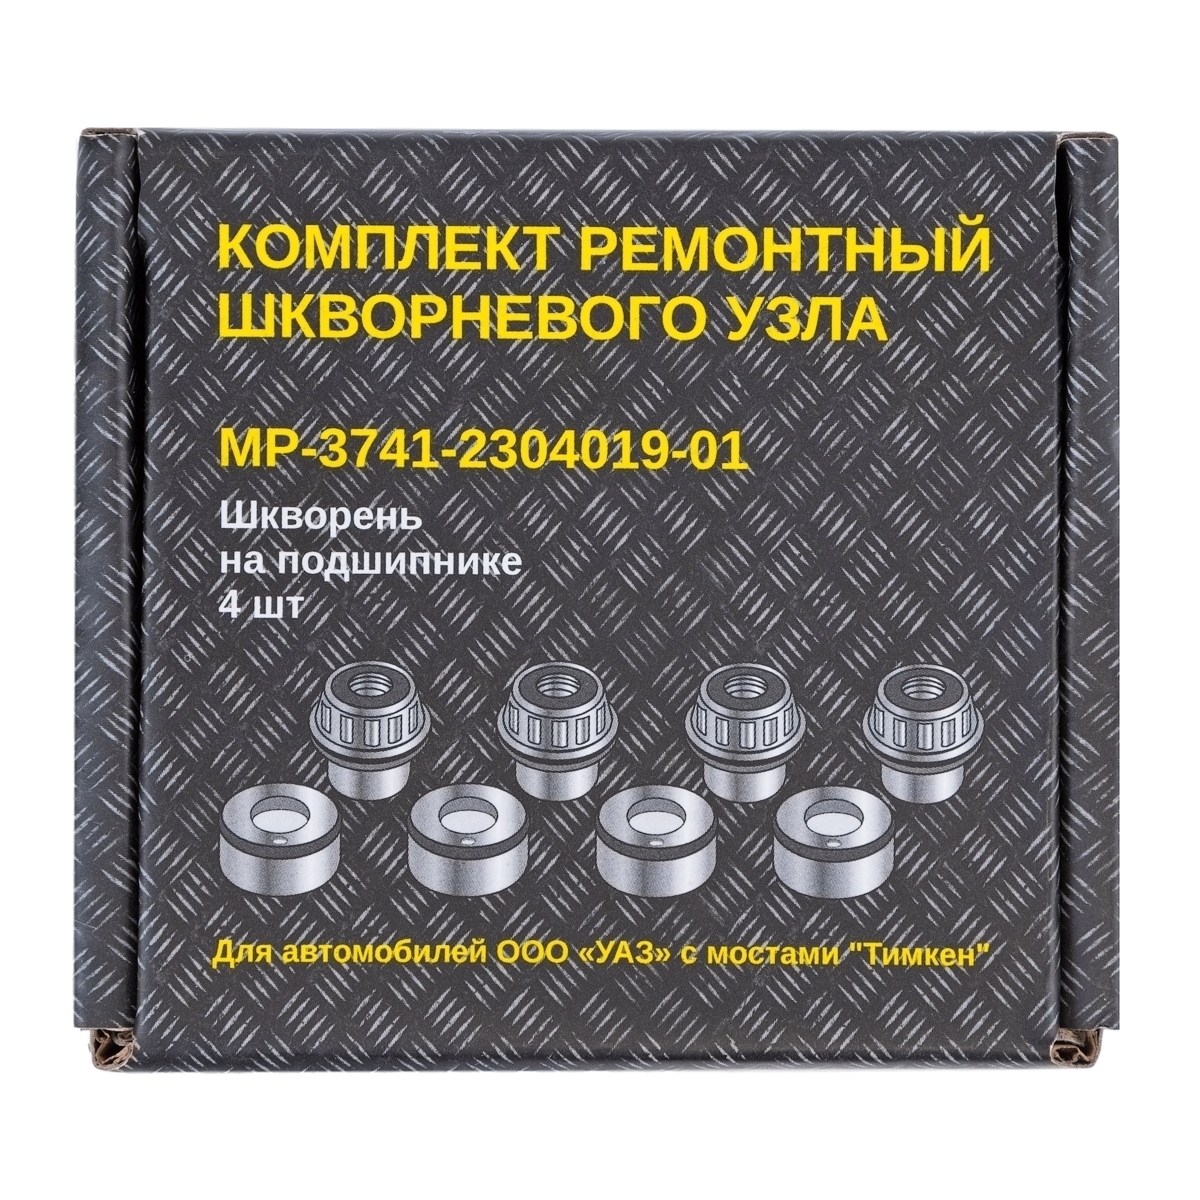 Комплект ремонтный шкворневого узла "MetalPart" для автомобилей УАЗ с мостами "Тимкен" (шкворни на п